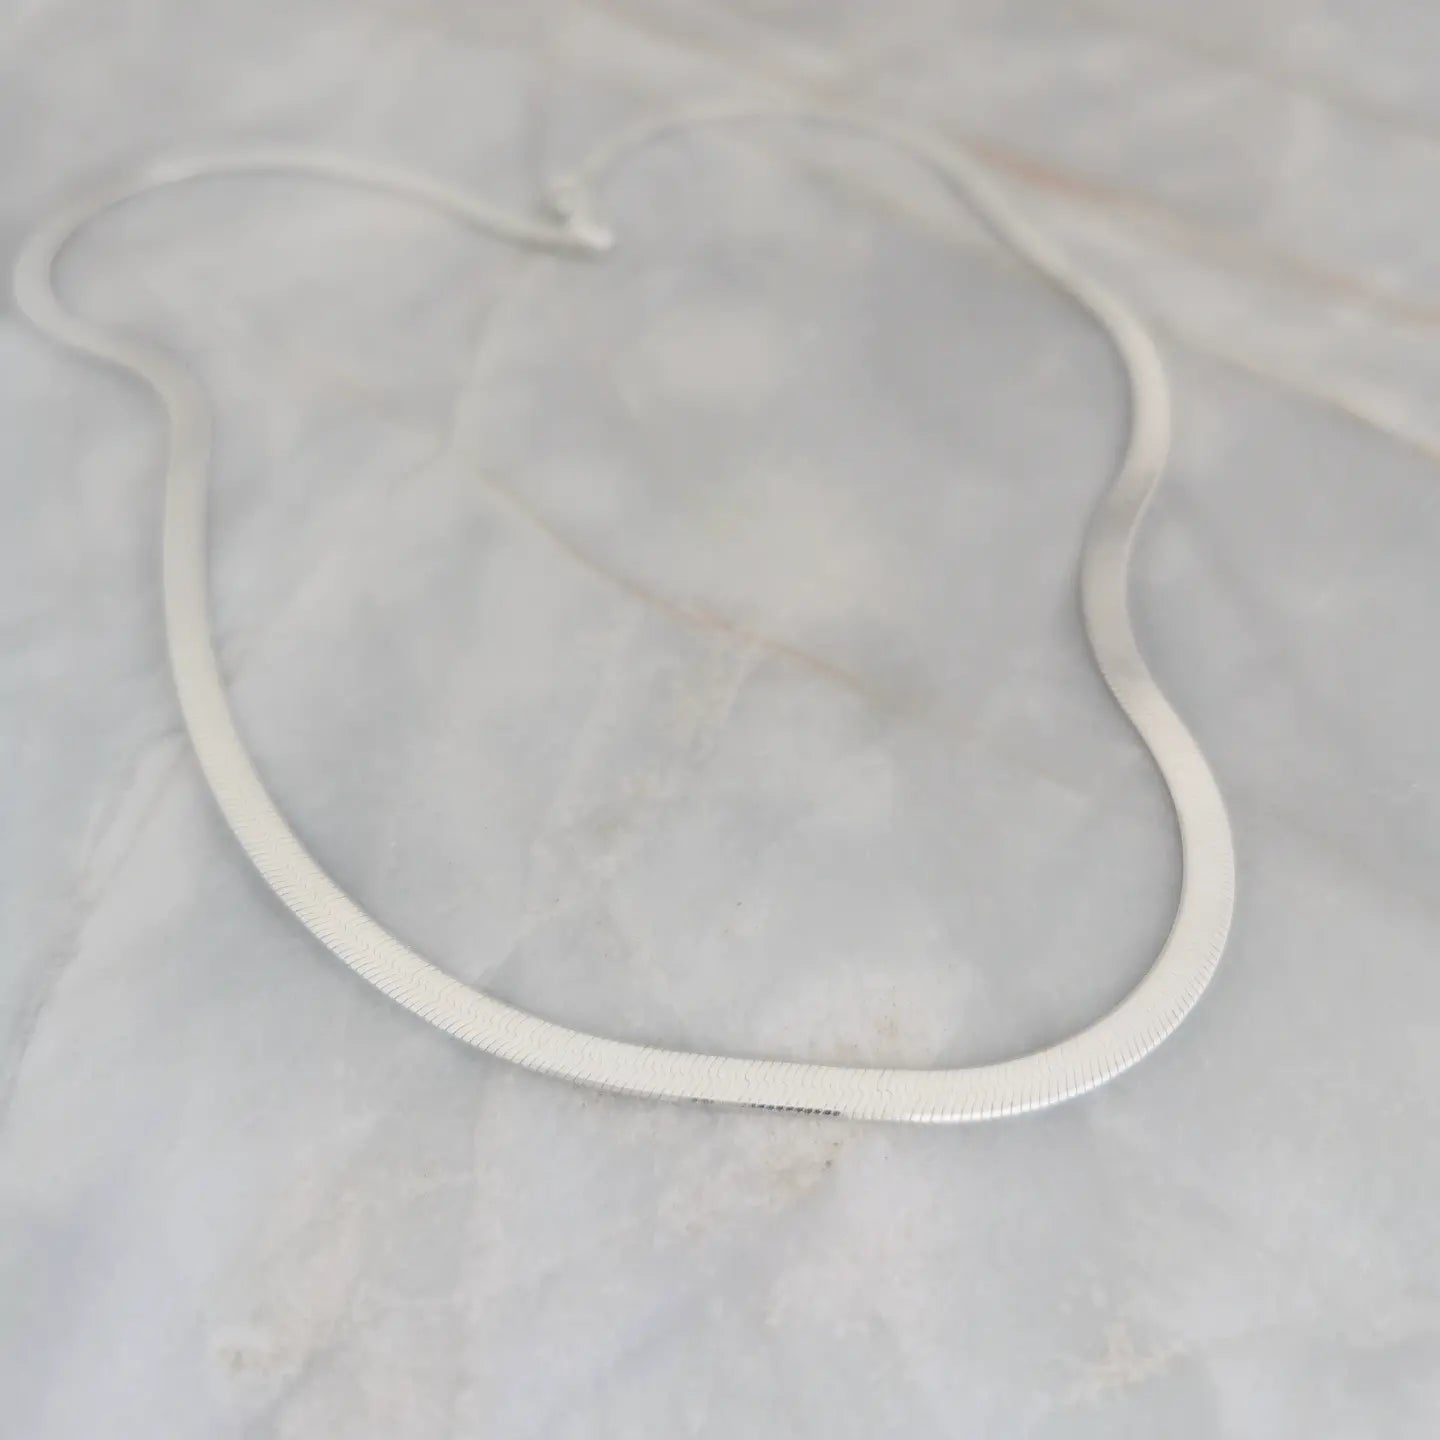 Silver Collar Necklace